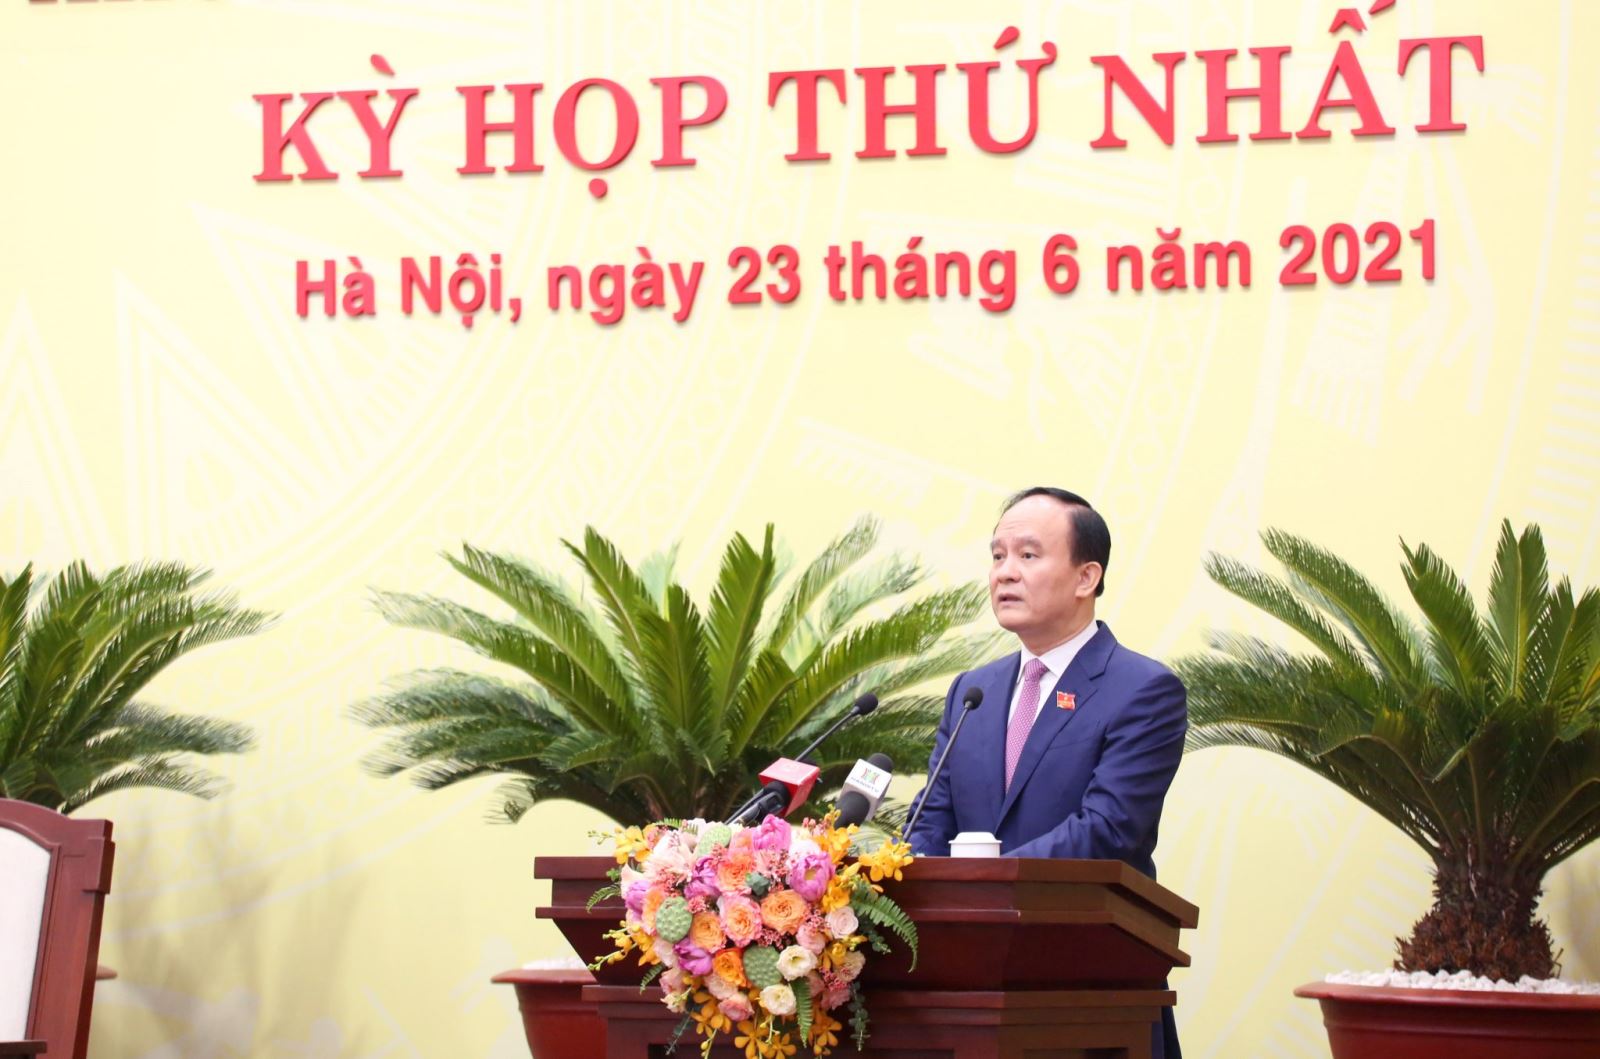 Phó Bí thư Thành uỷ, Chủ tịch HĐND thành phố Khoá XVI Nguyễn Ngọc Tuấn